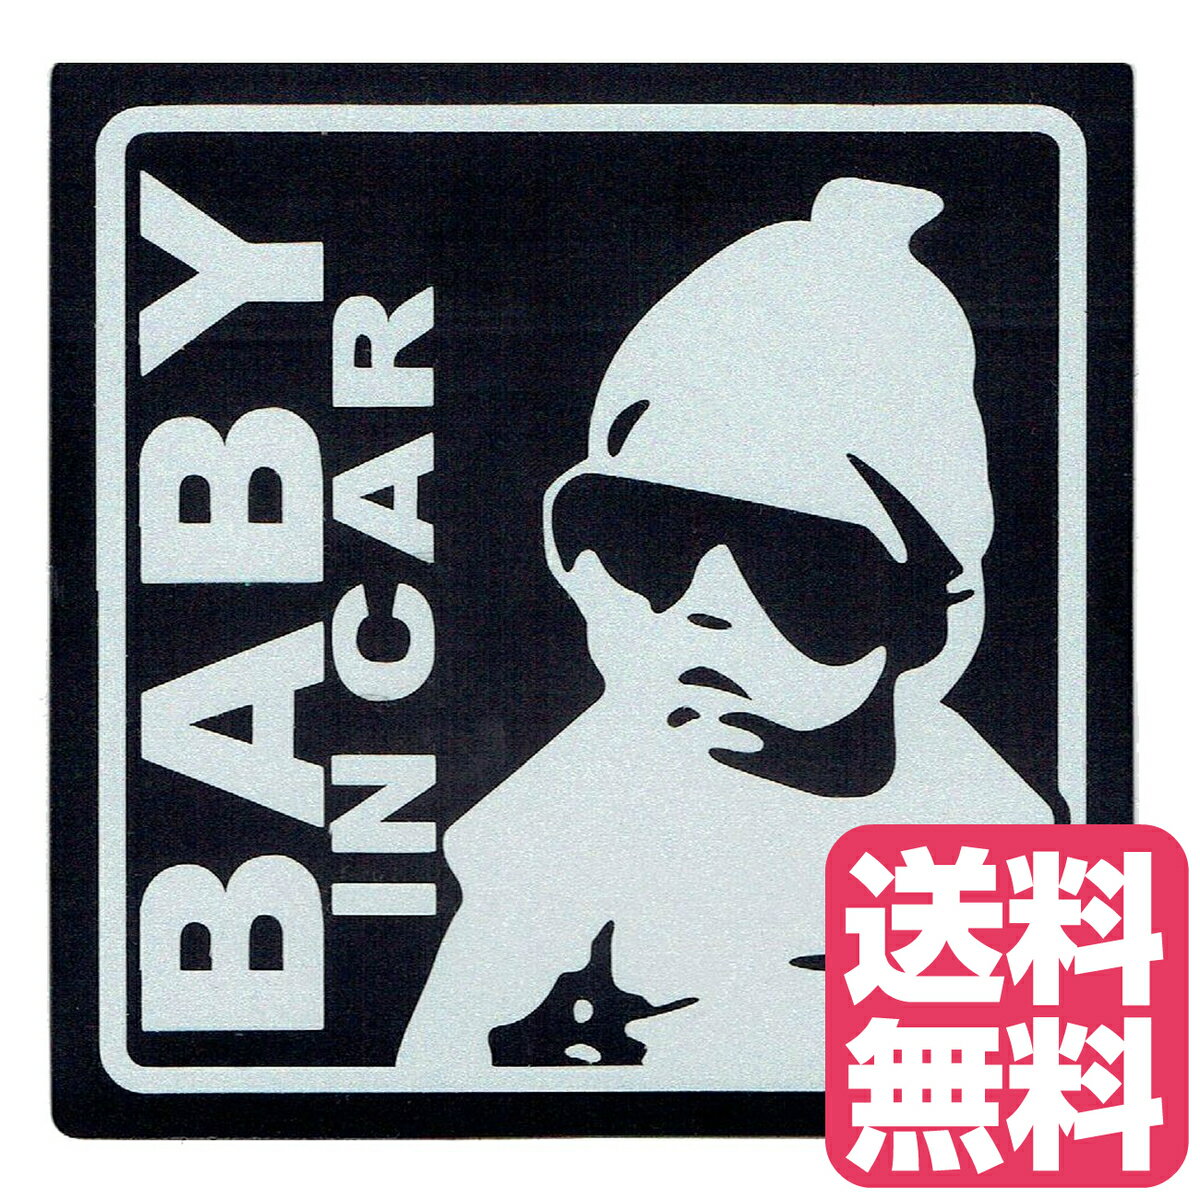 送料無料 BABY IN CAR 赤ちゃん乗車中 マグネット 外貼り ステッカー12cm ブラック 赤ちゃん乗ってます..